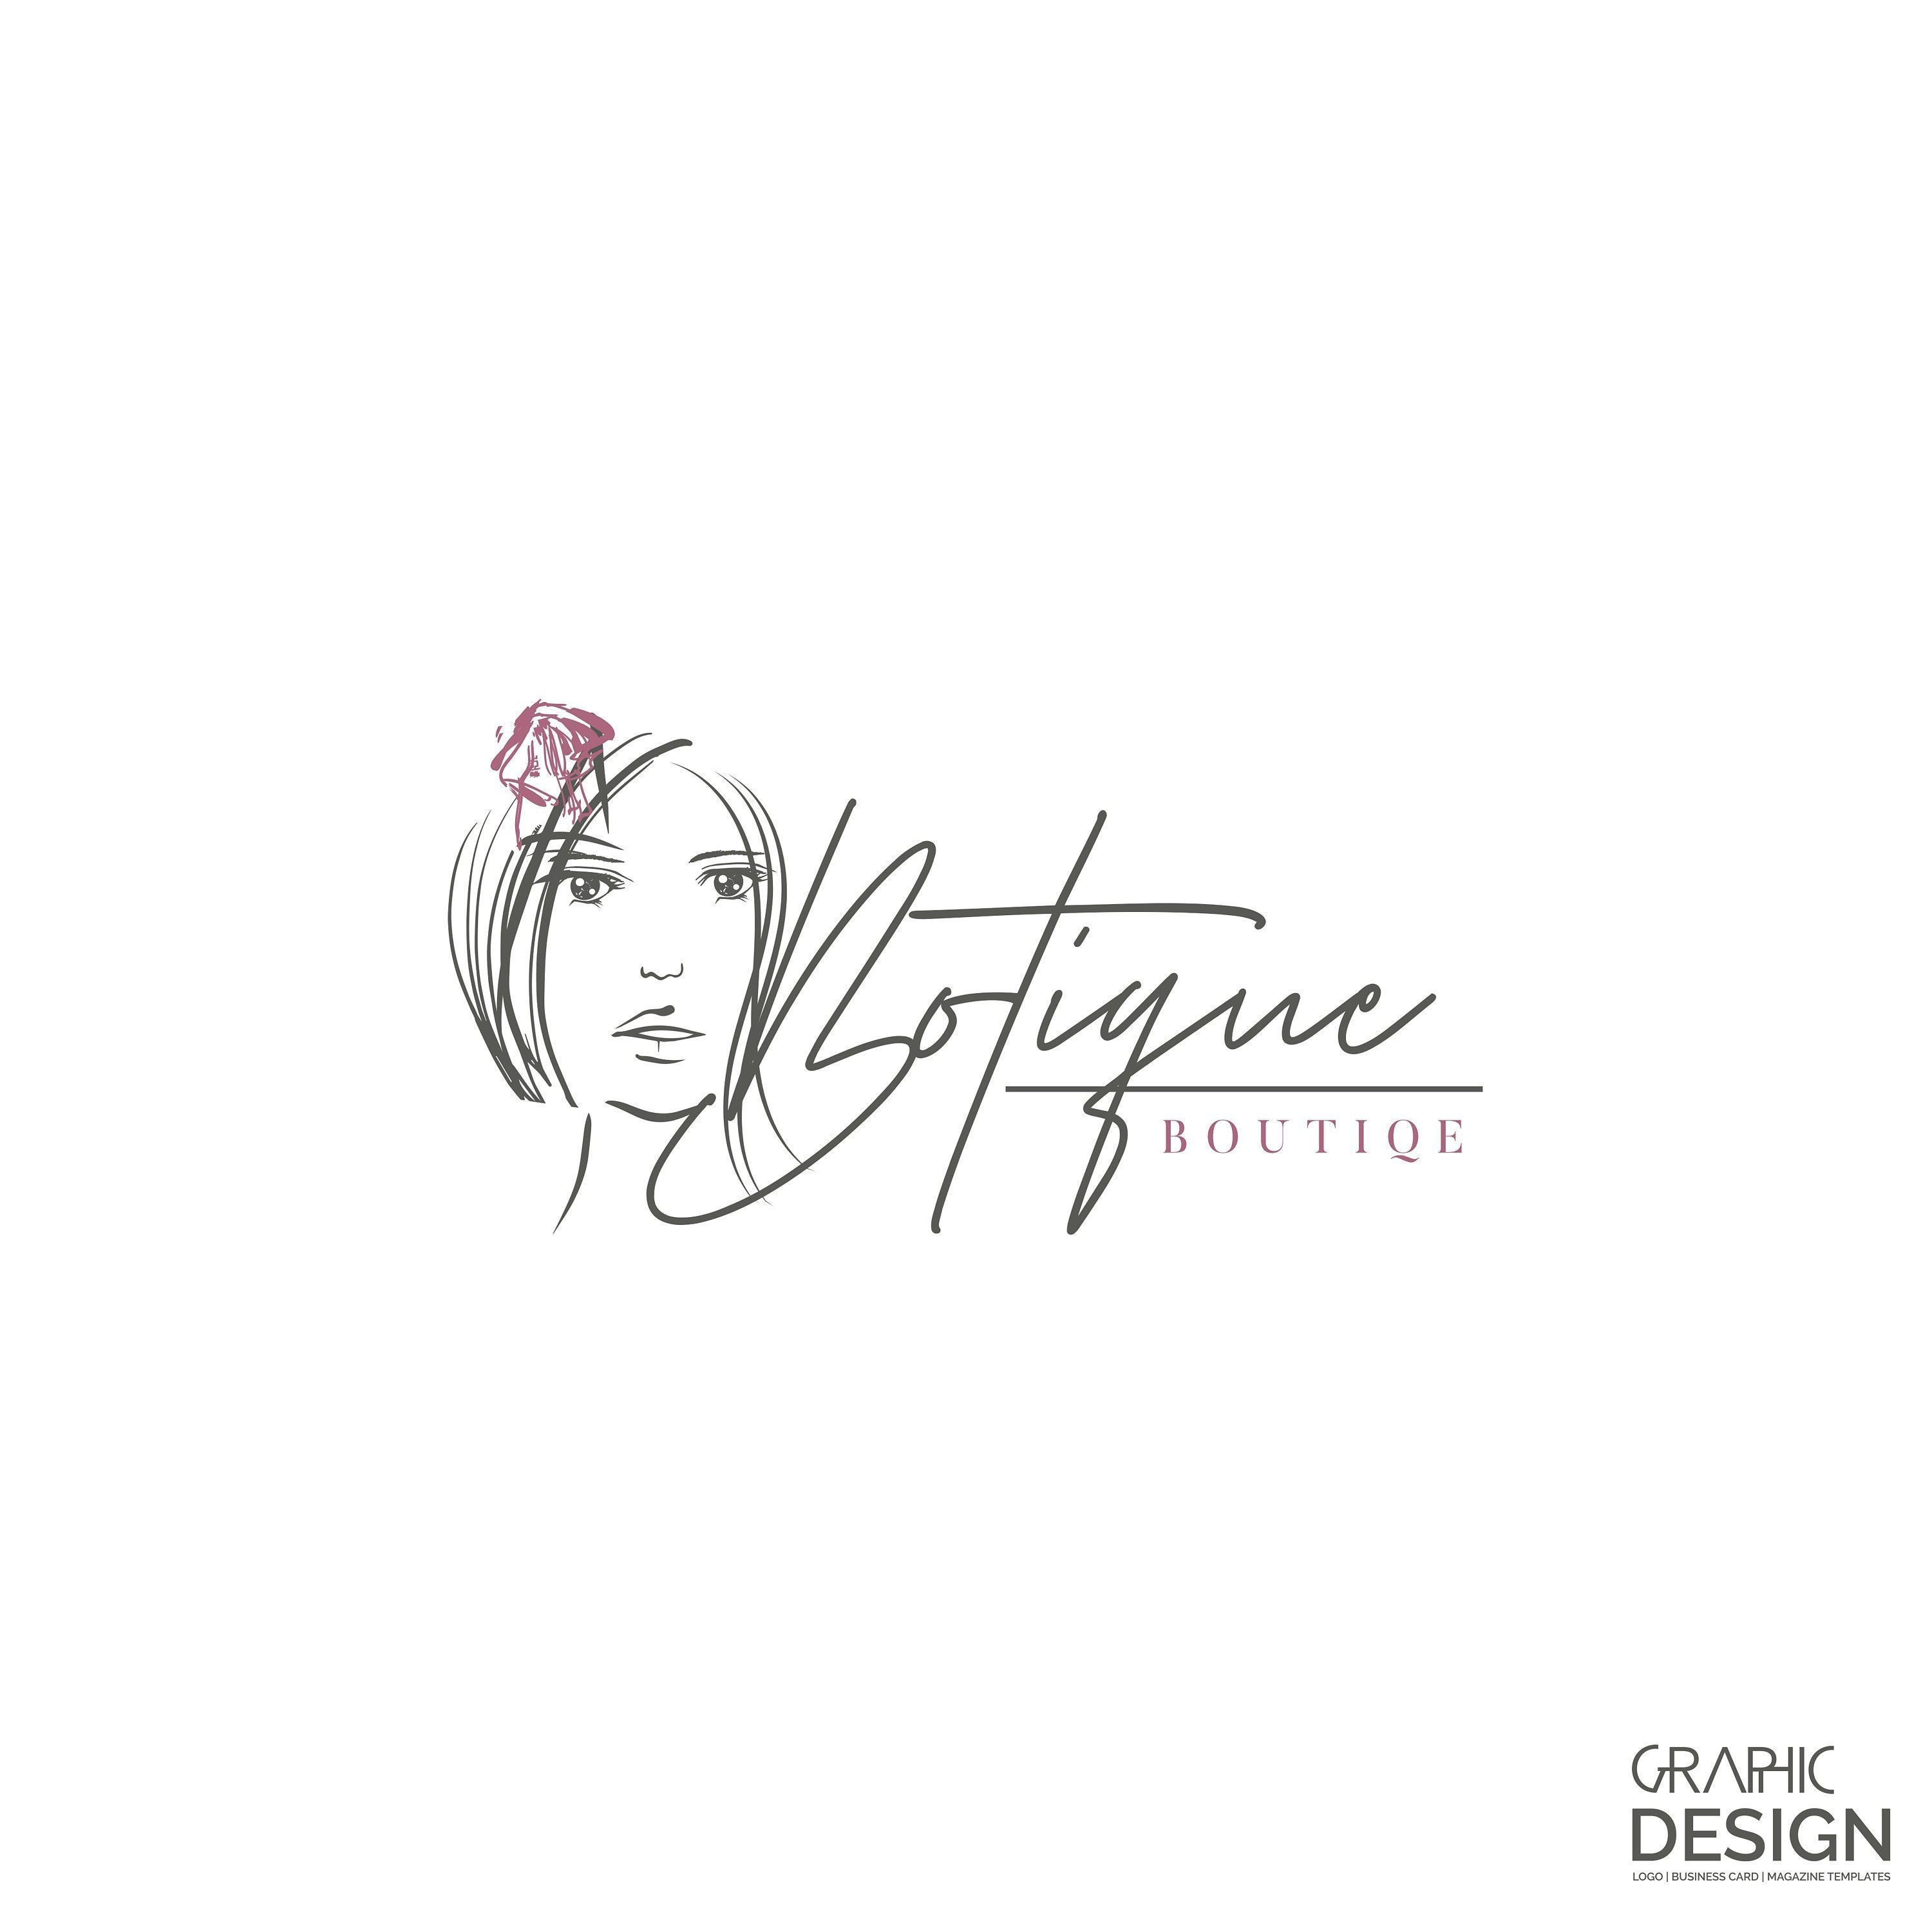 Boutique Logo Design New Modern Logo Design Make-up Studio - Etsy